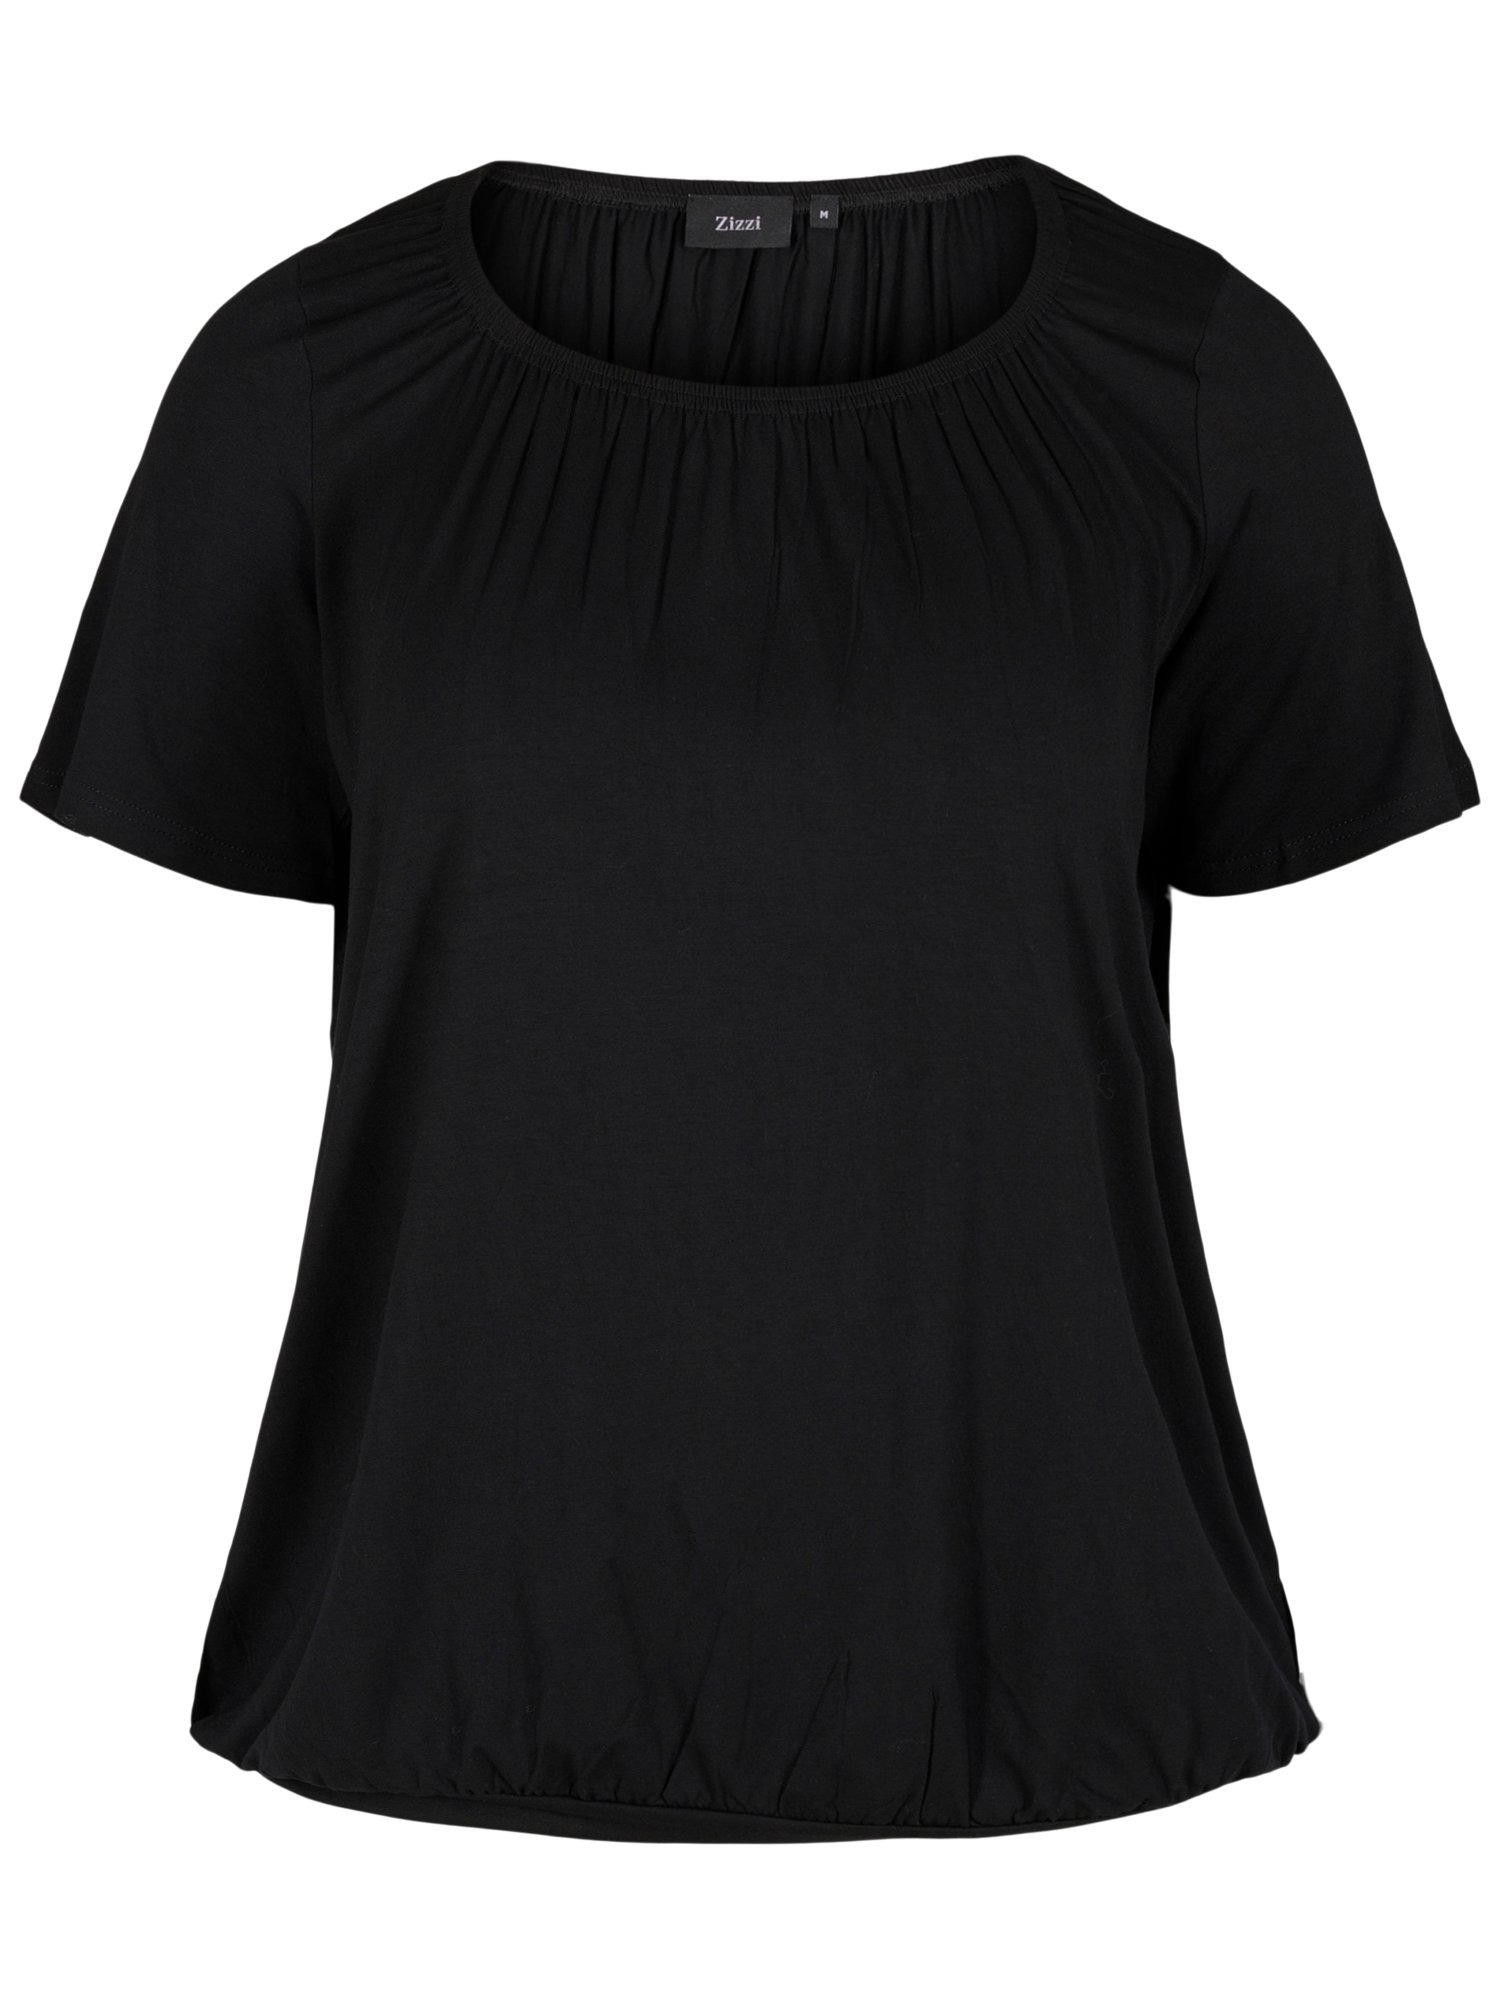 Kobiety Odzież Zizzi Koszulka w kolorze Czarnym 